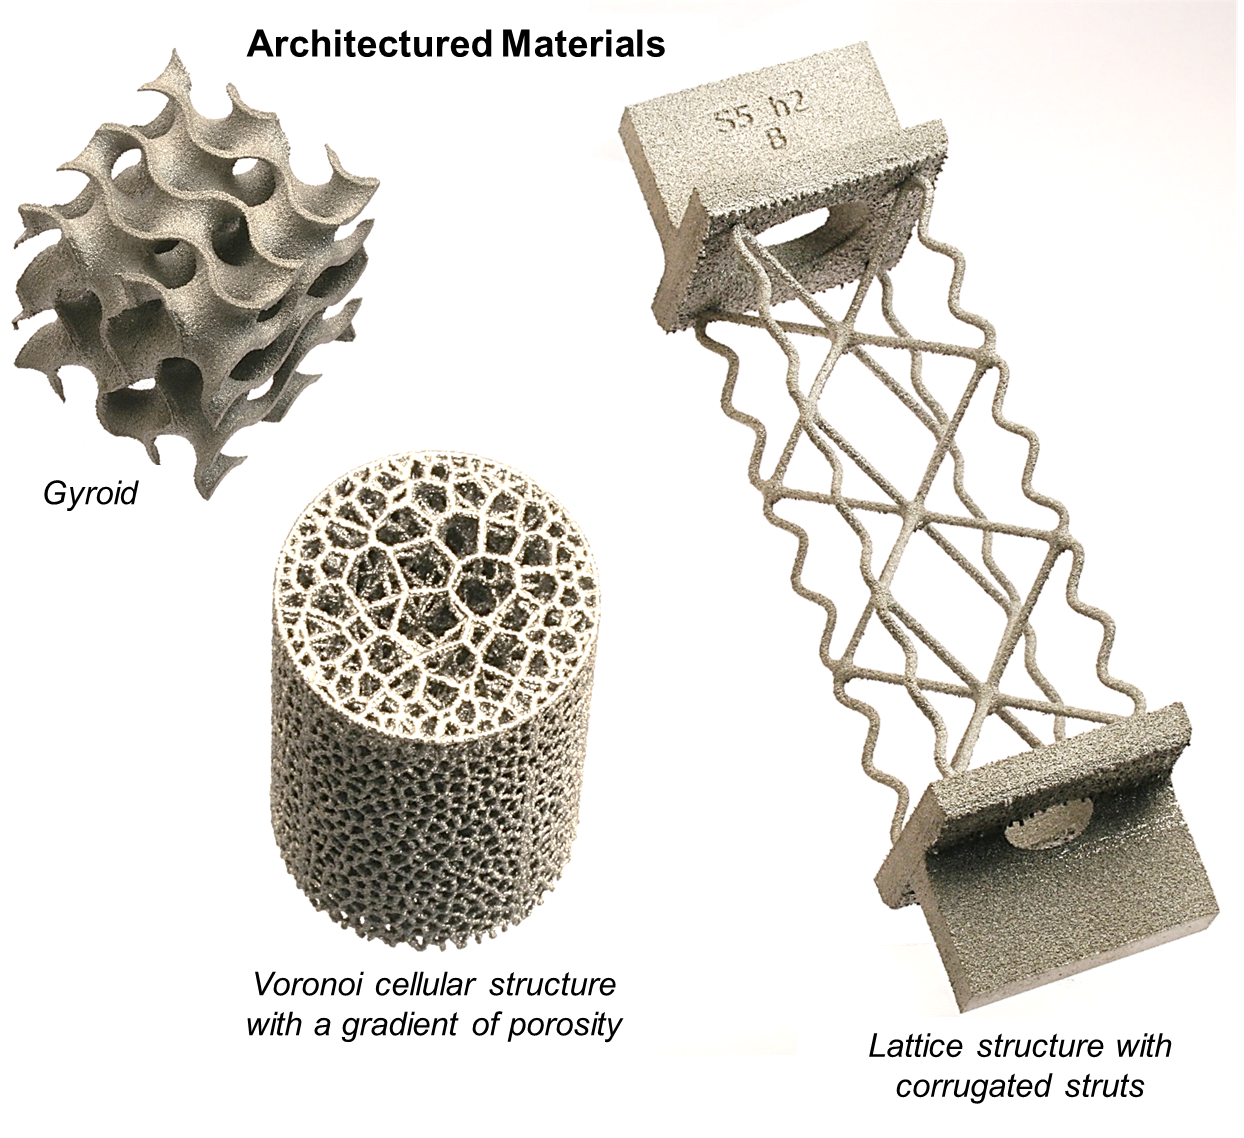 Architectured Materials